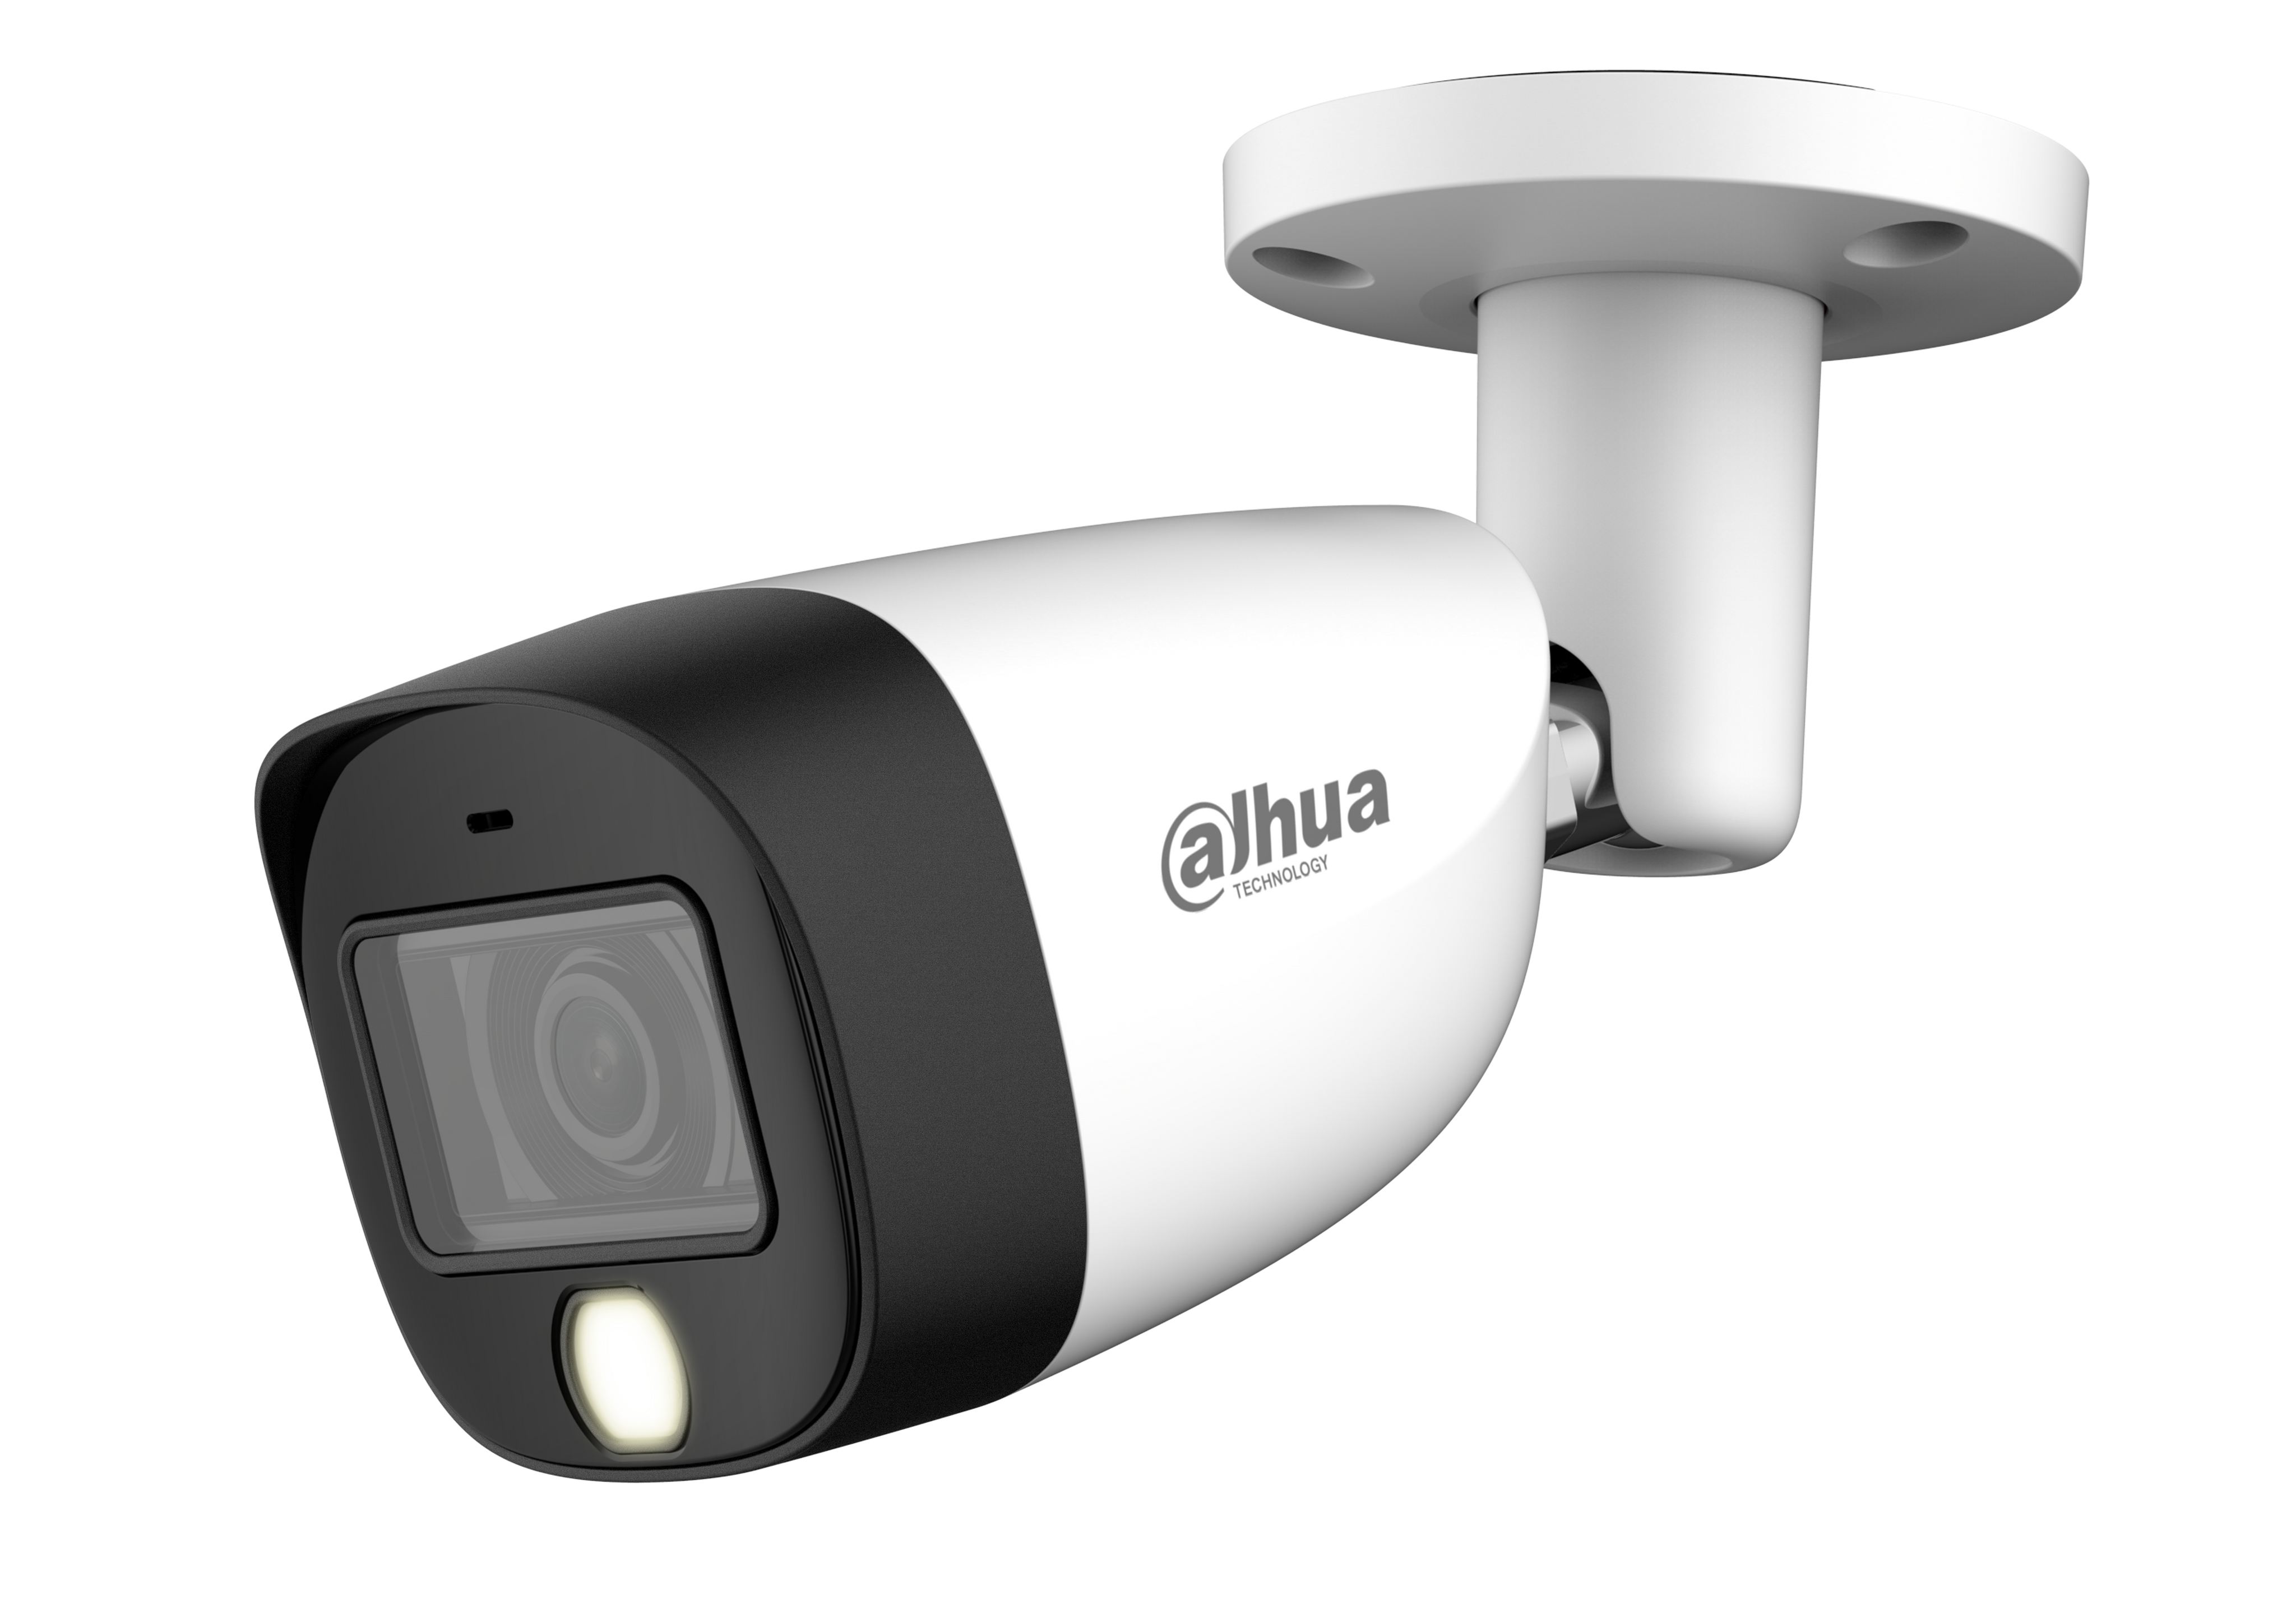 DAHUA HAC-HFW1200CM-IL-A 2MP Smart Dual Light HDCVI Fixed-focal Bullet Camera